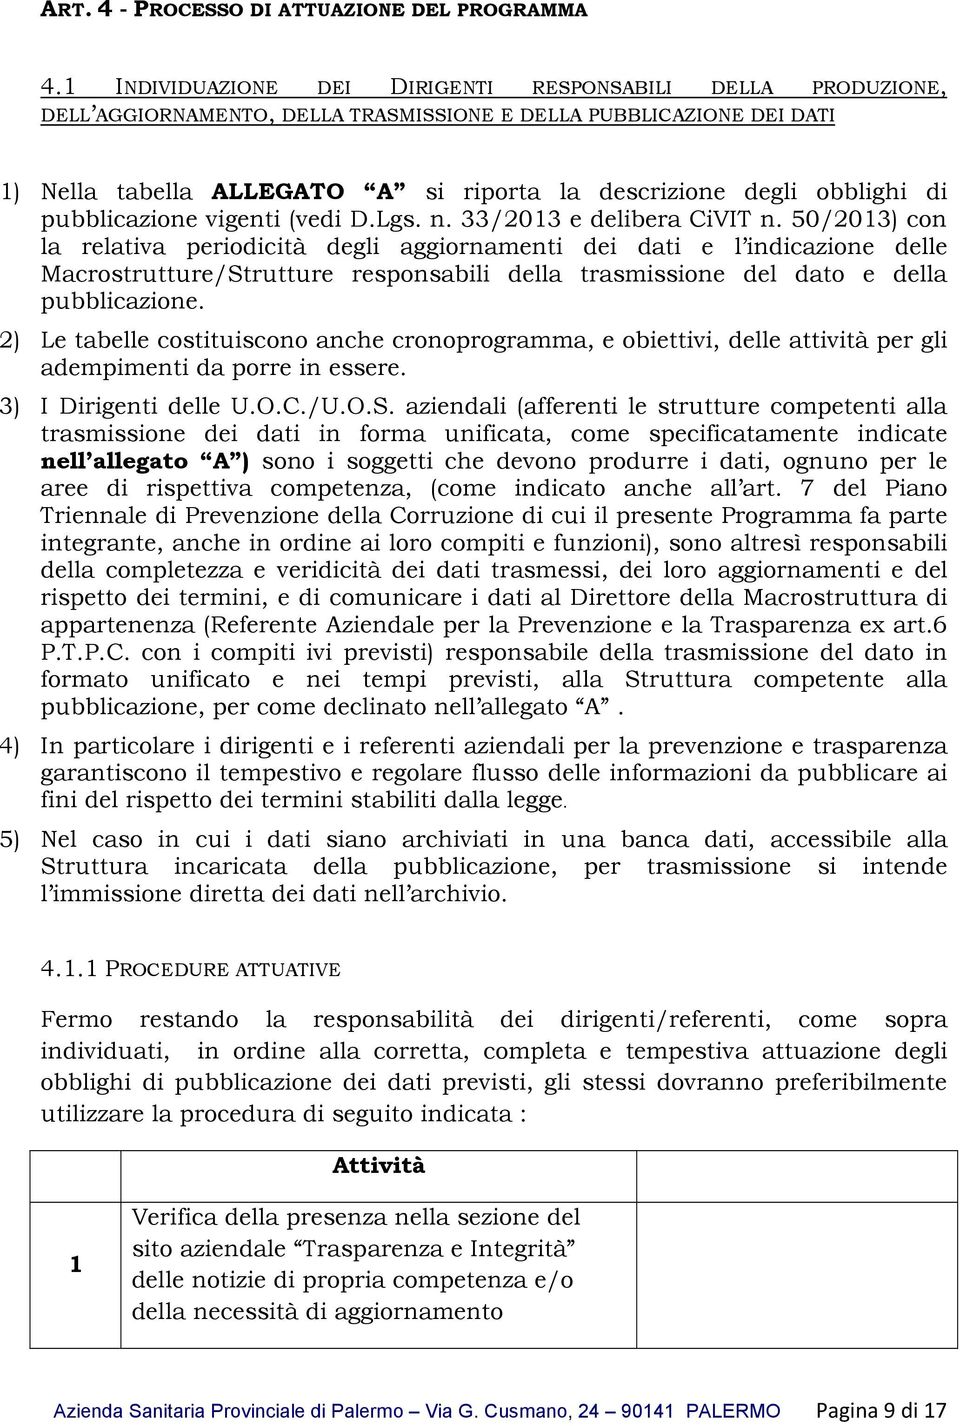 obblighi di pubblicazione vigenti (vedi D.Lgs. n. 33/2013 e delibera CiVIT n.